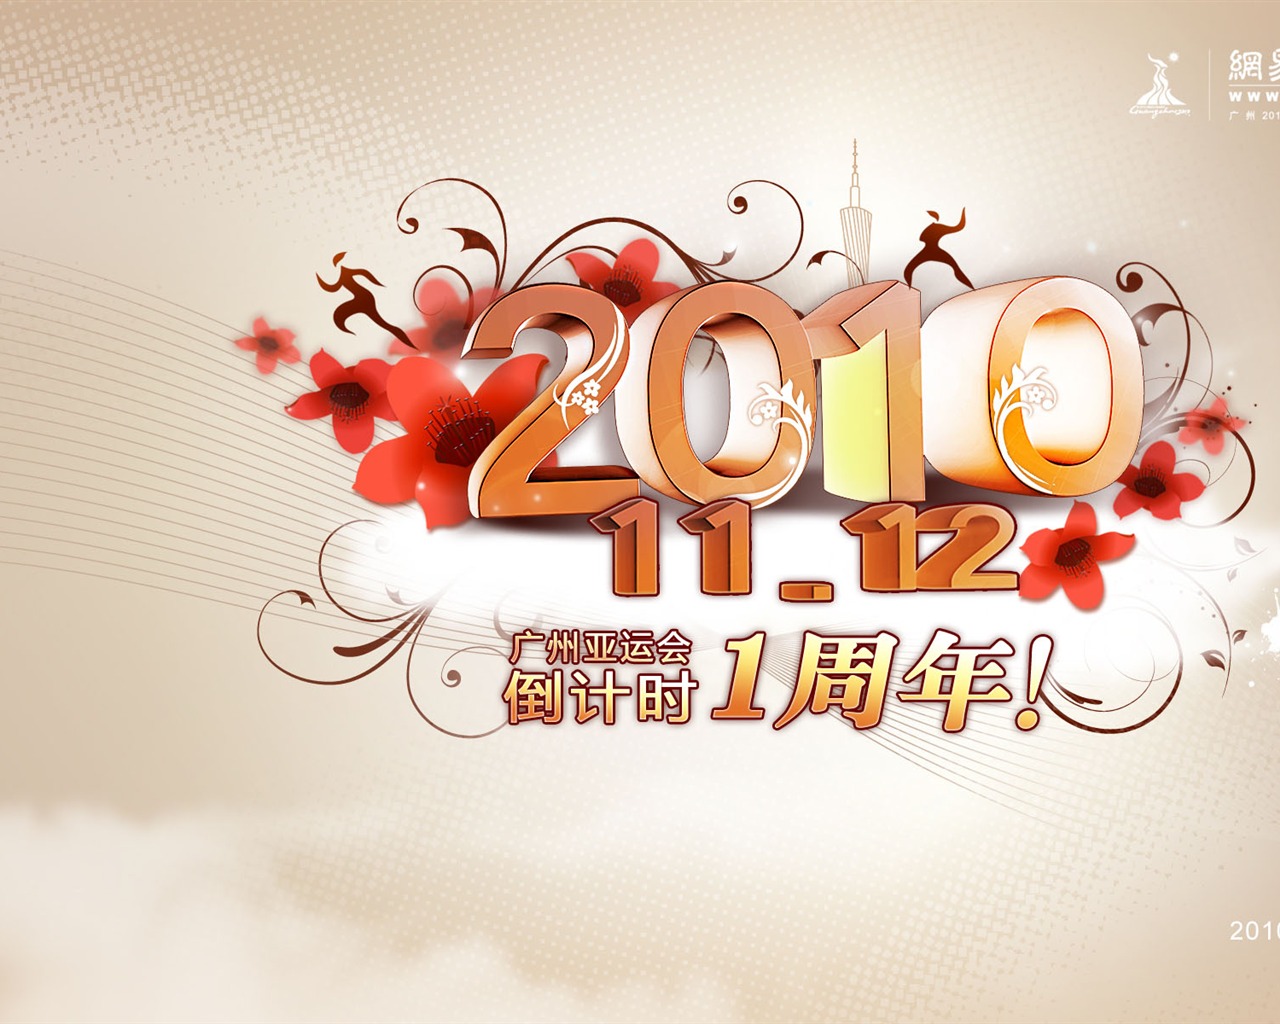 Juegos Asiáticos de Guangzhou álbum de fondo de pantalla (1) #2 - 1280x1024